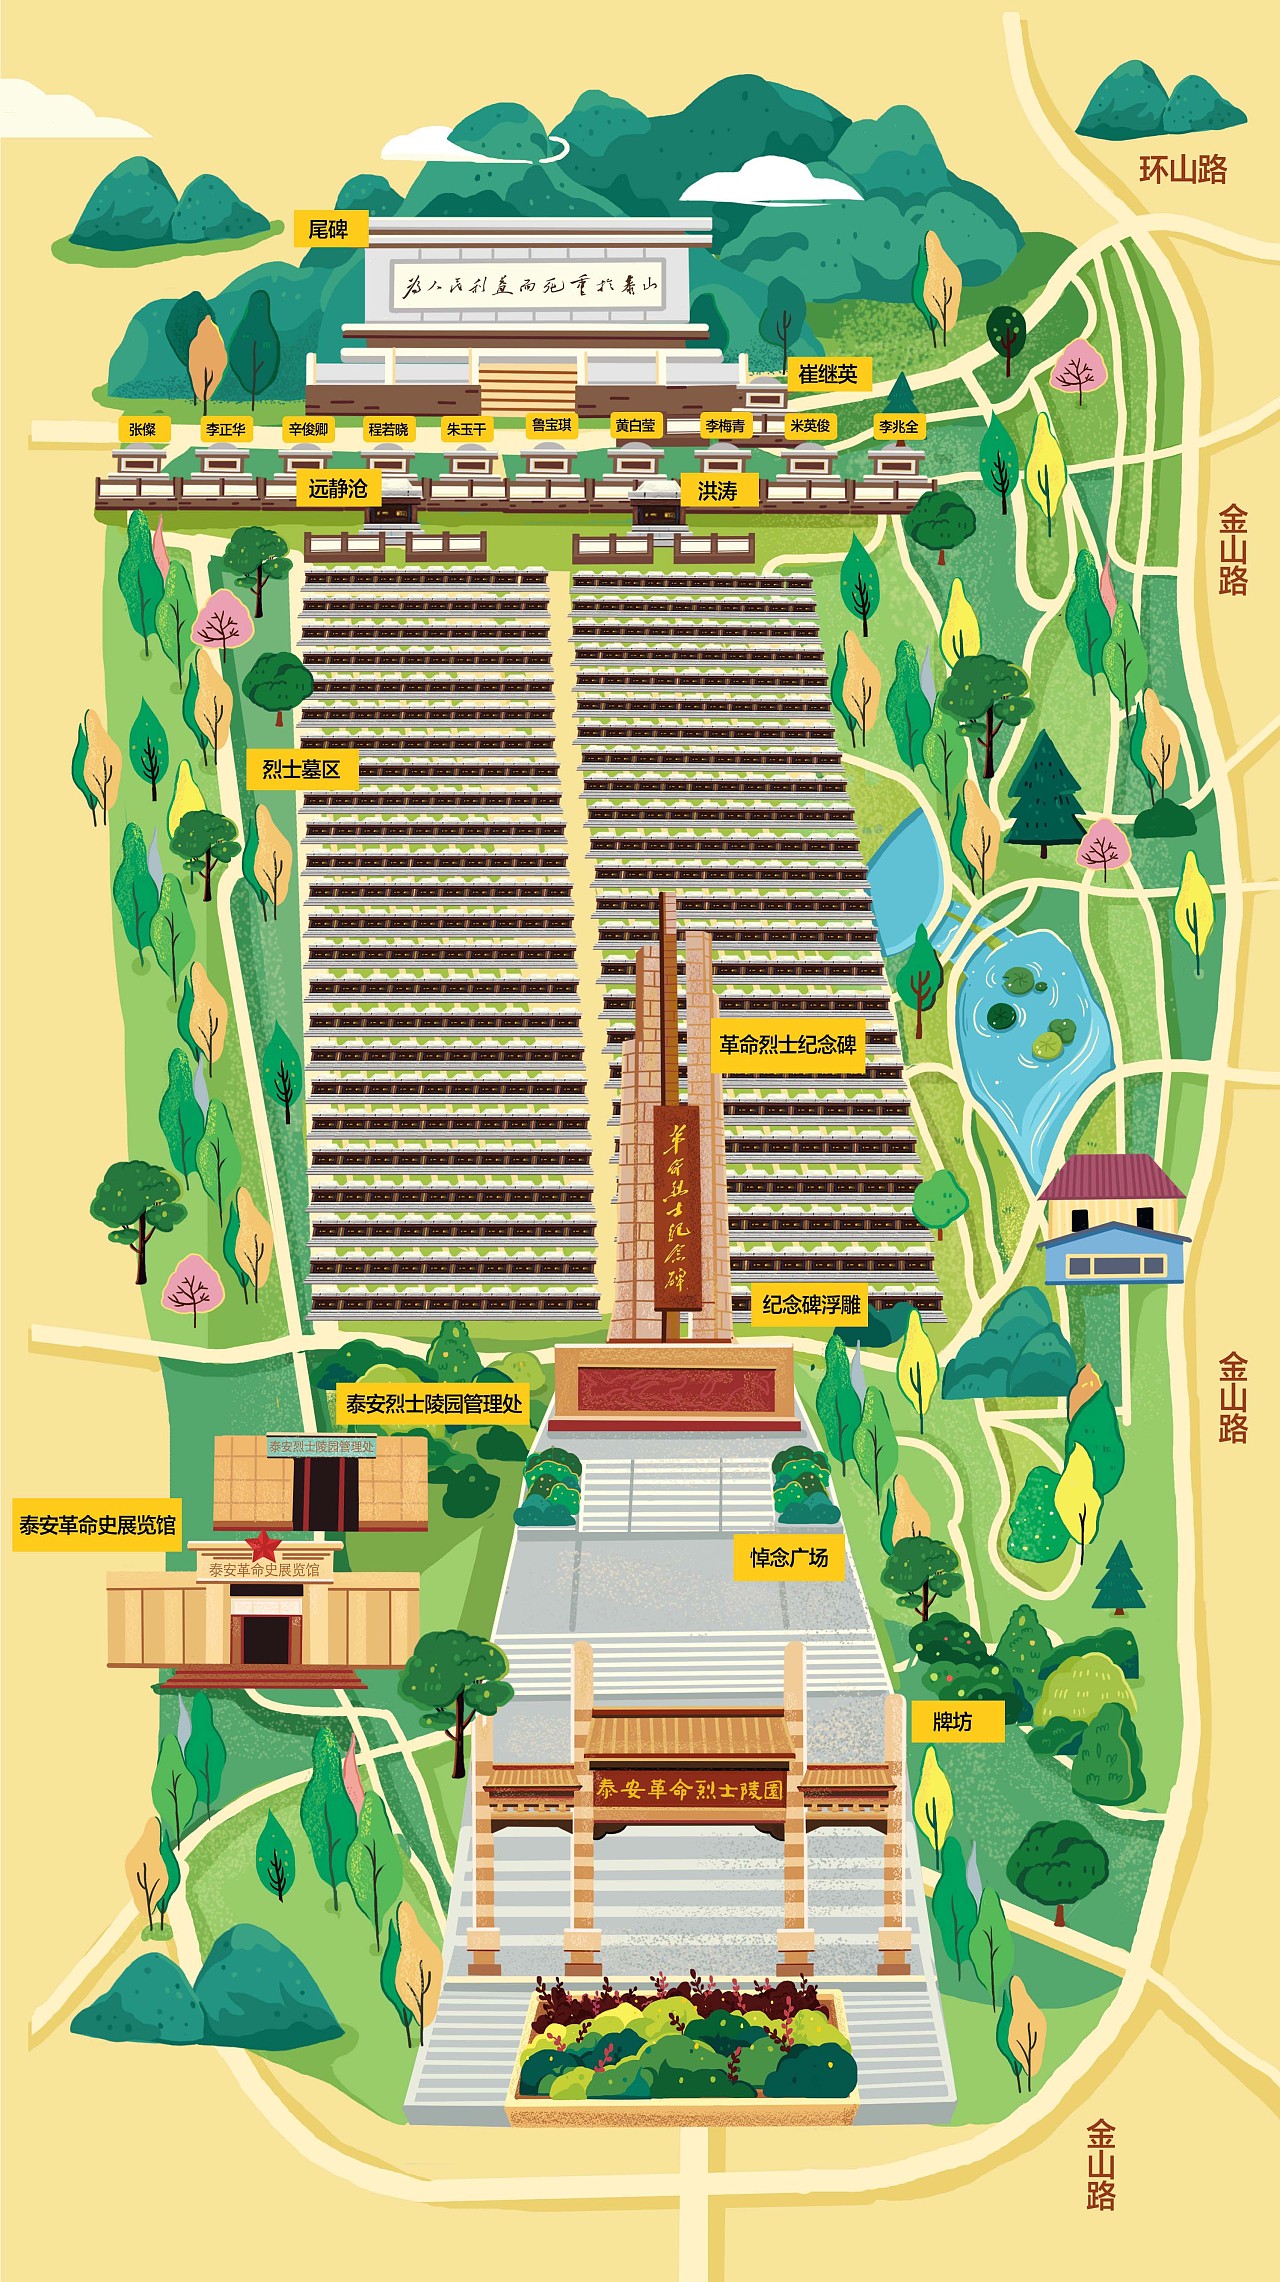 泰安烈士陵园手绘地图(手机导视图)|插画|商业插